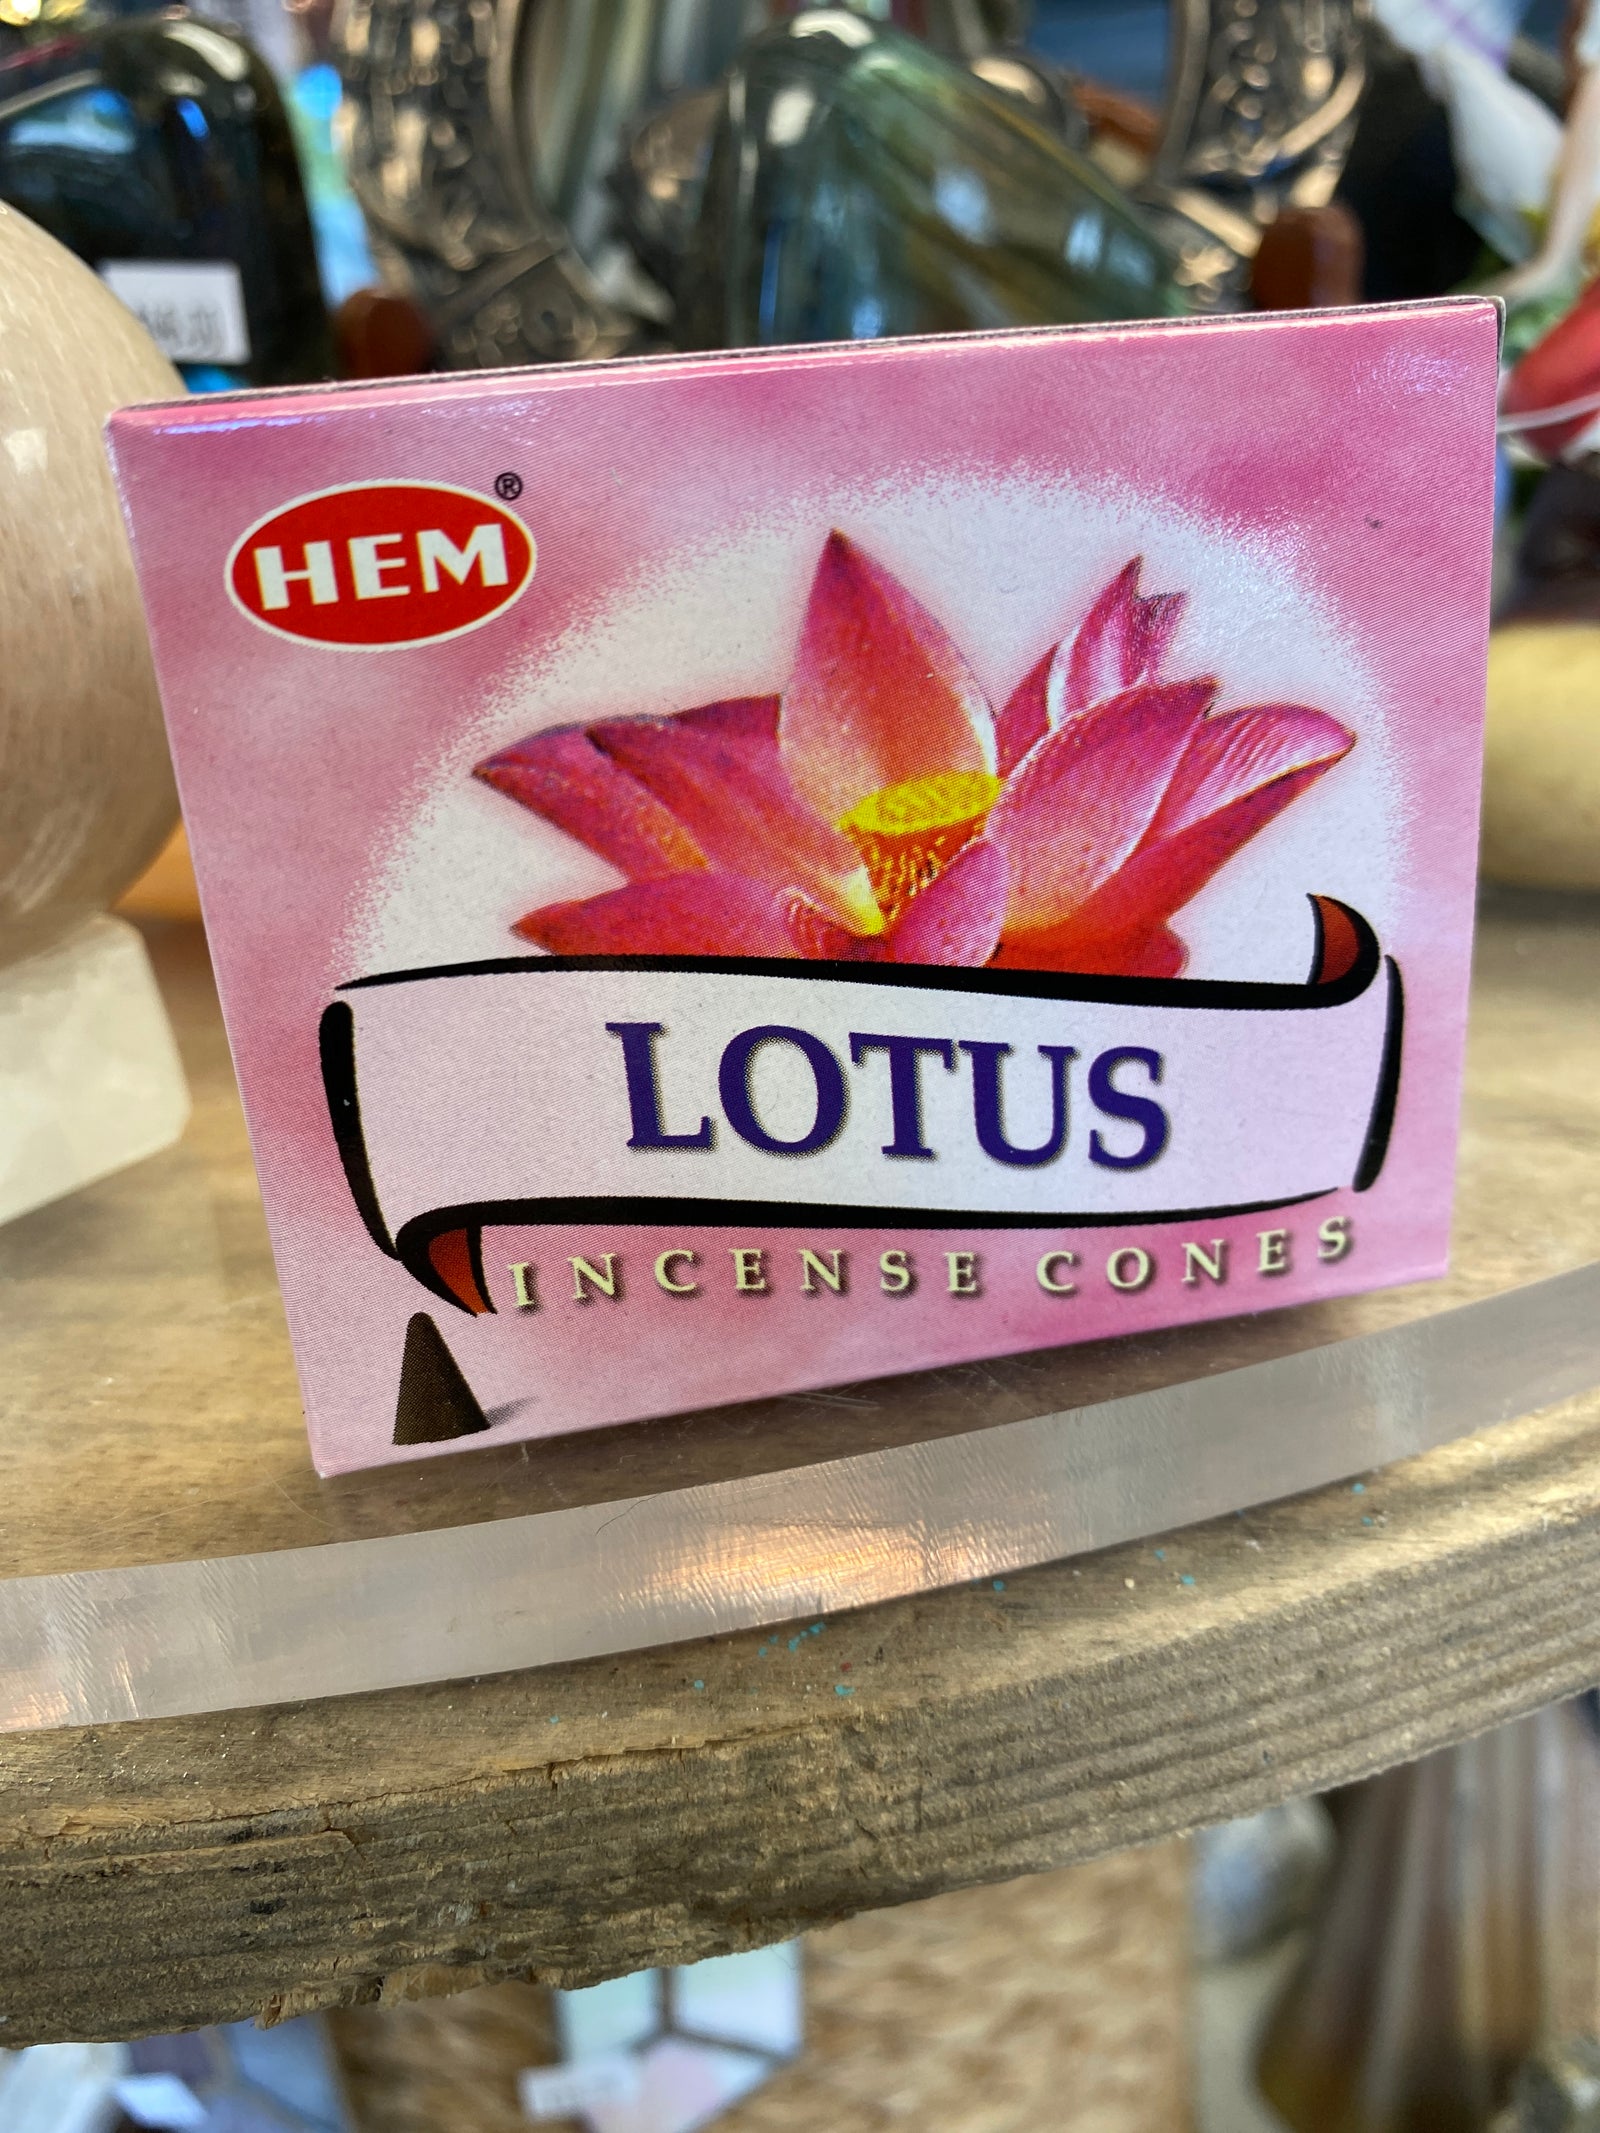 Lotus HEM incense cone 10 pack